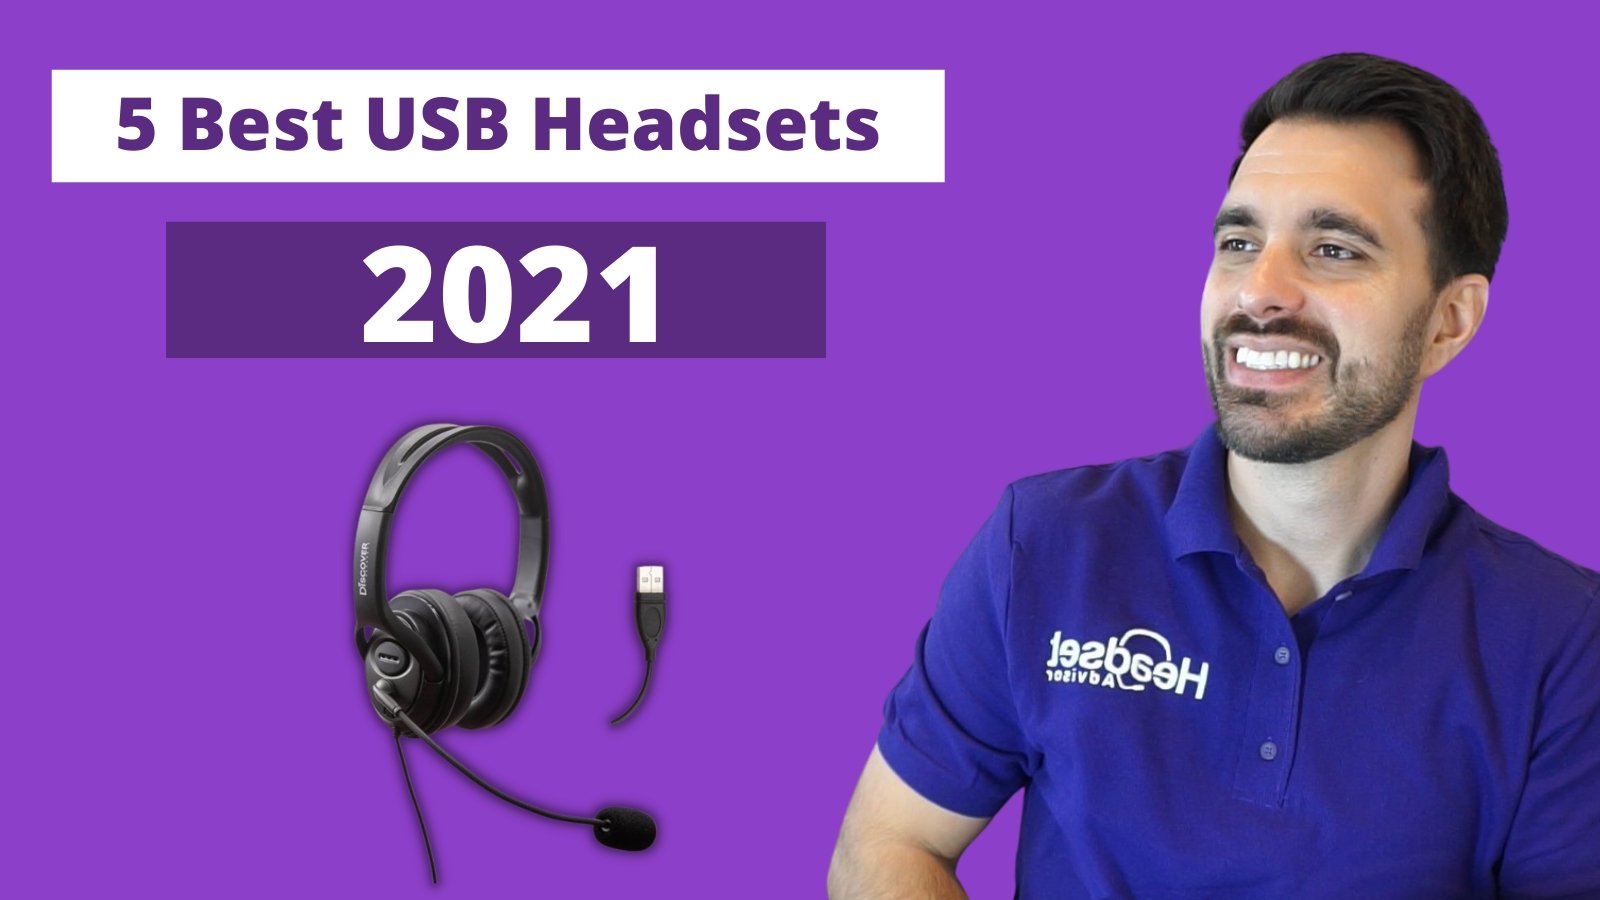 The 5 Best USB Headsets For 2021 - Headset Advisor